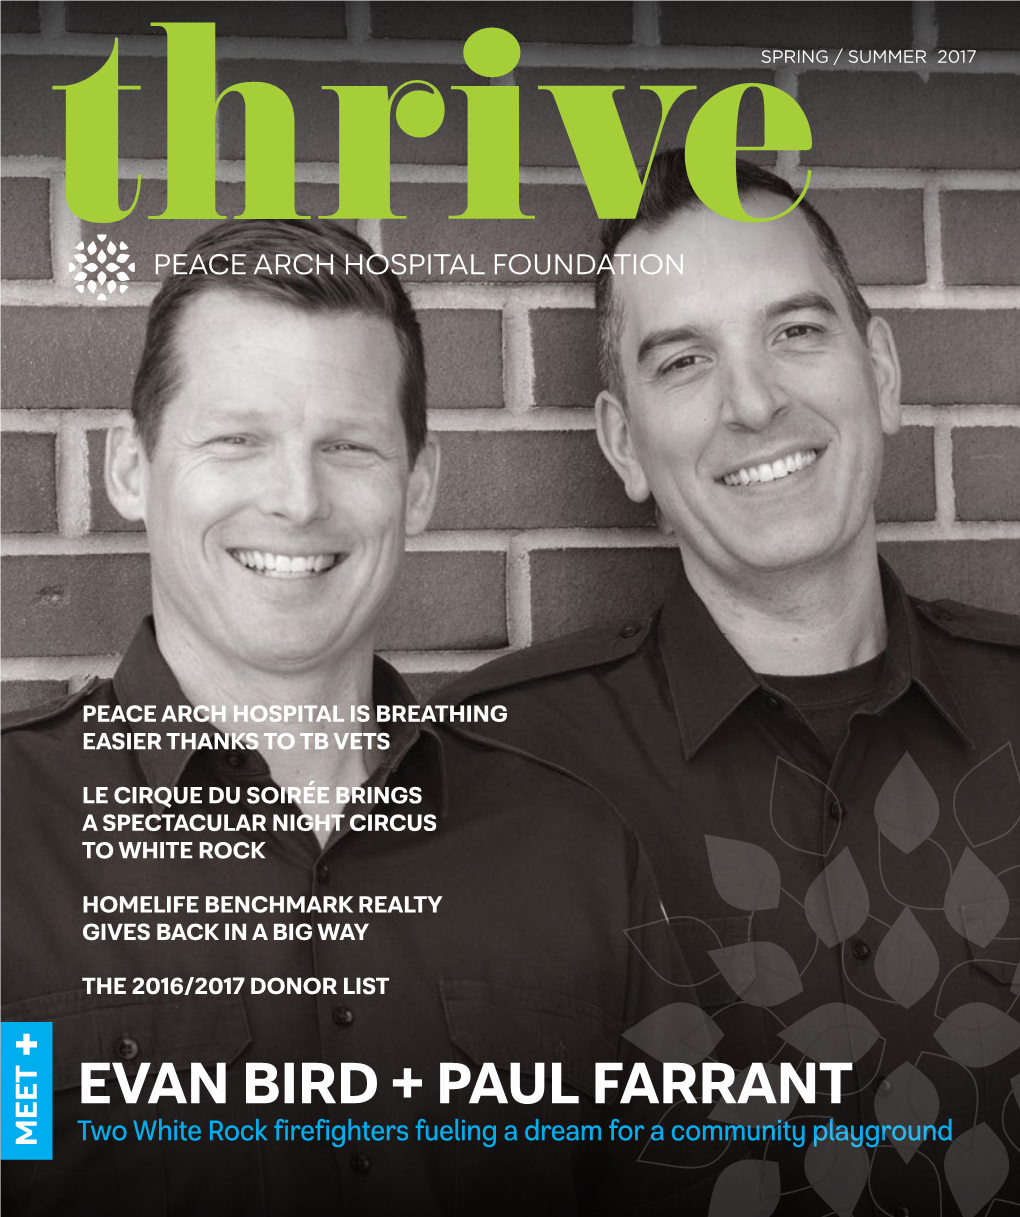 Evan Bird + Paul Farrant